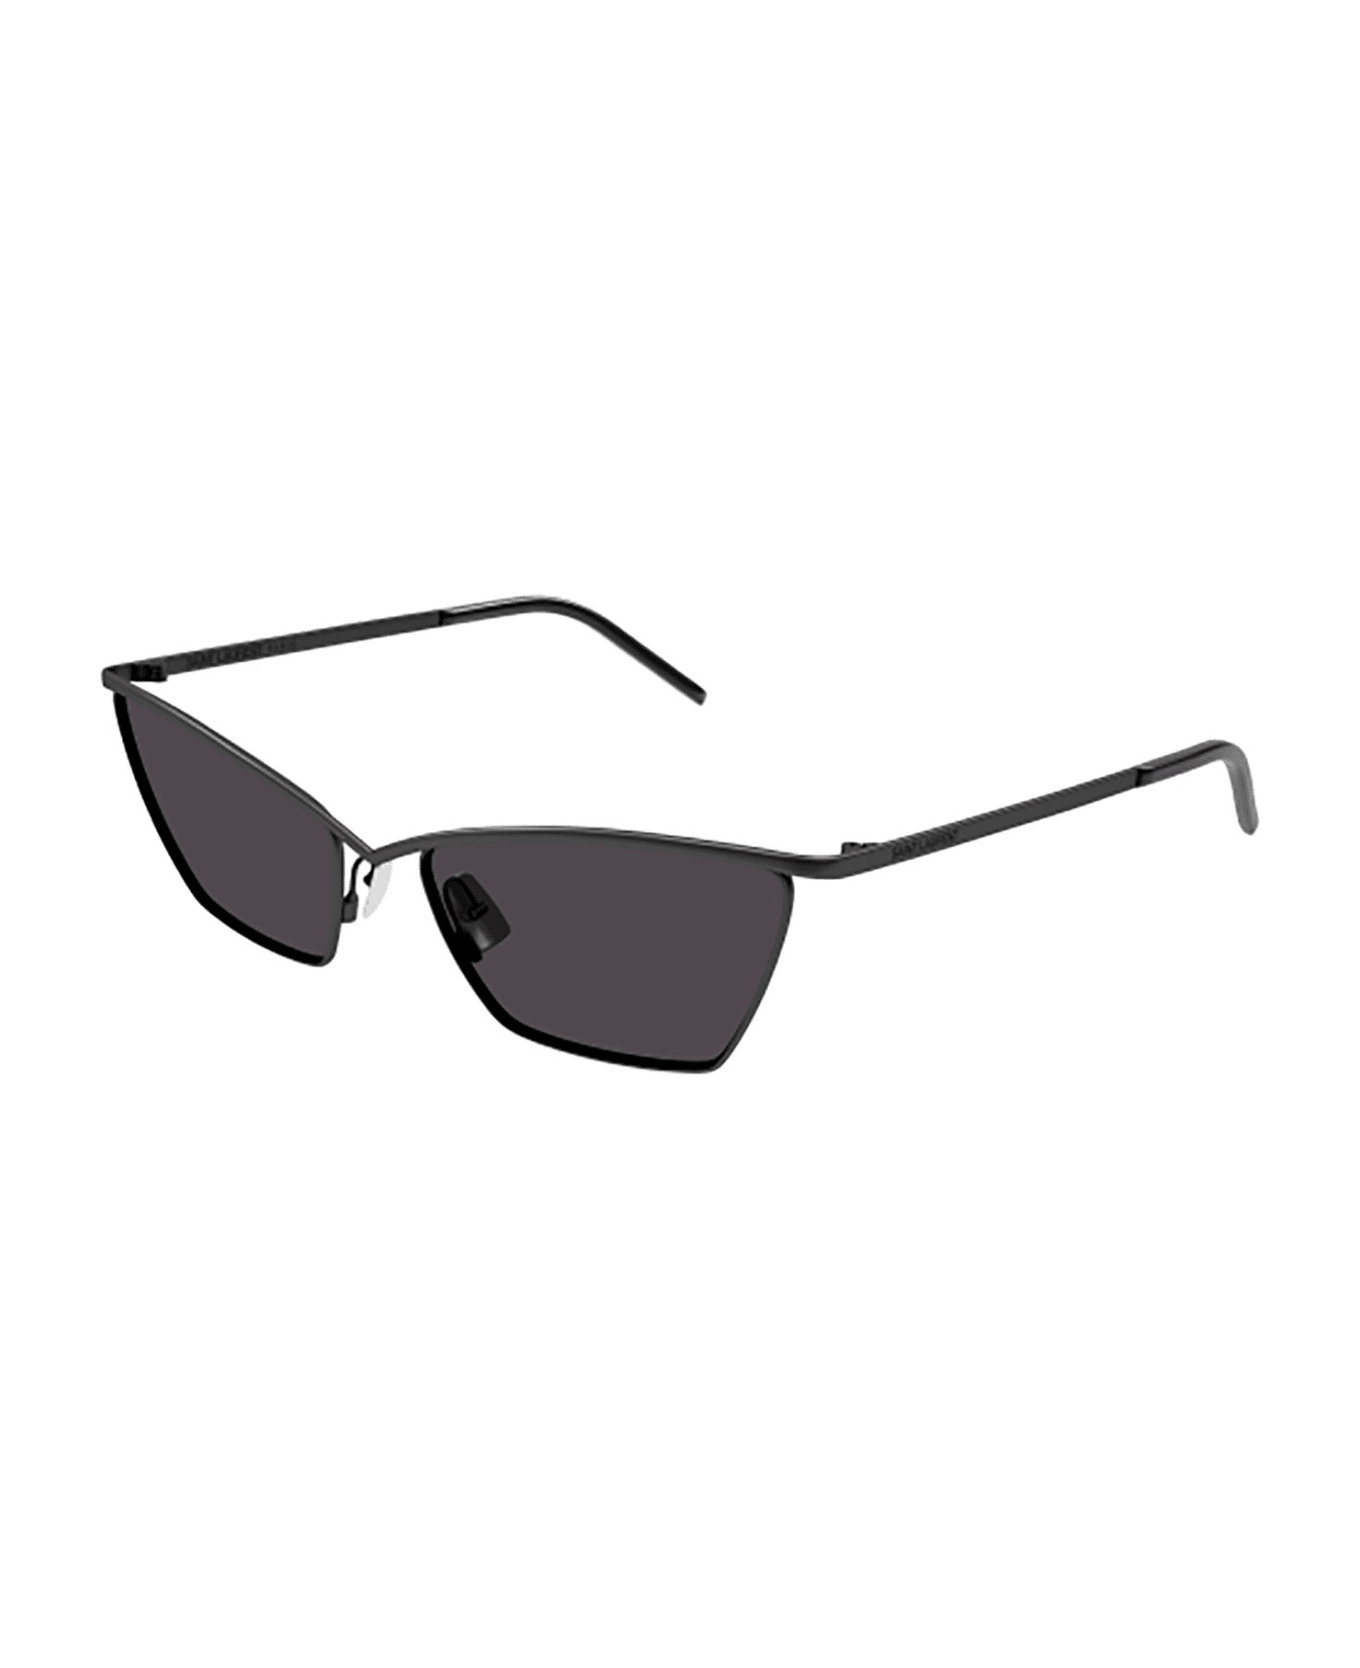 Saint Laurent Eyewear SL 637 Sunglasses - Black Black Black